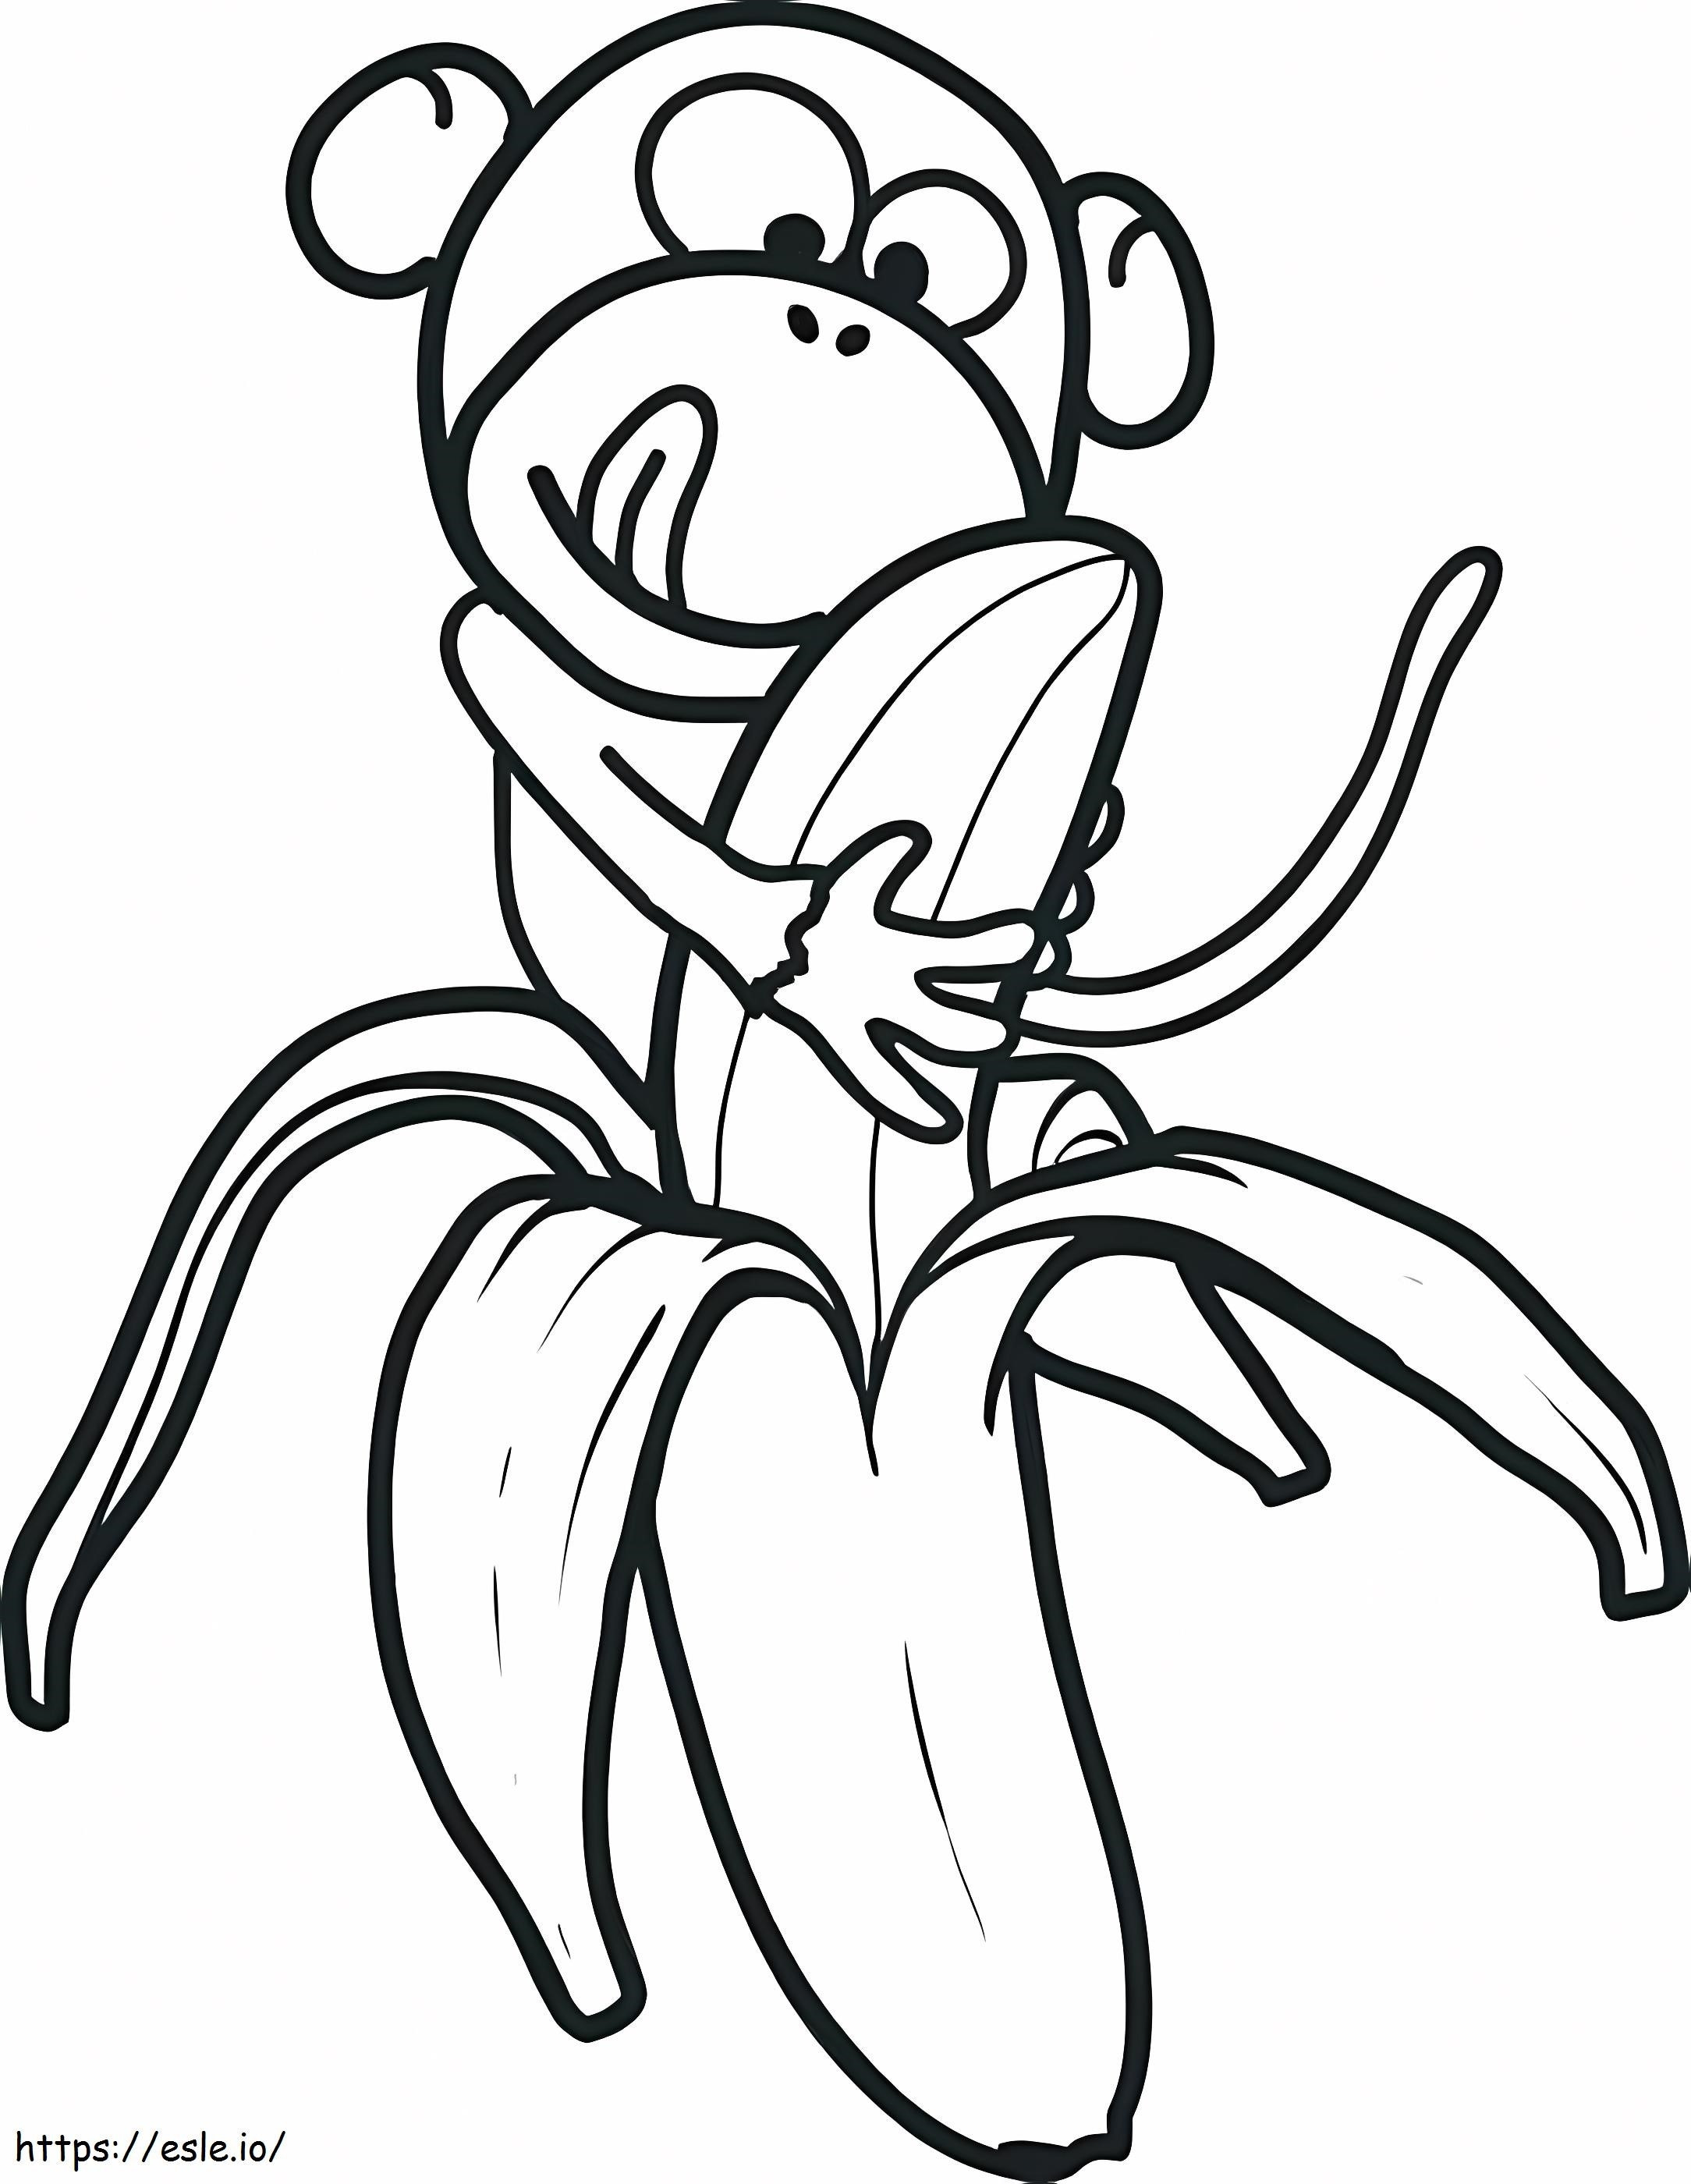 Mono com plátano para colorir